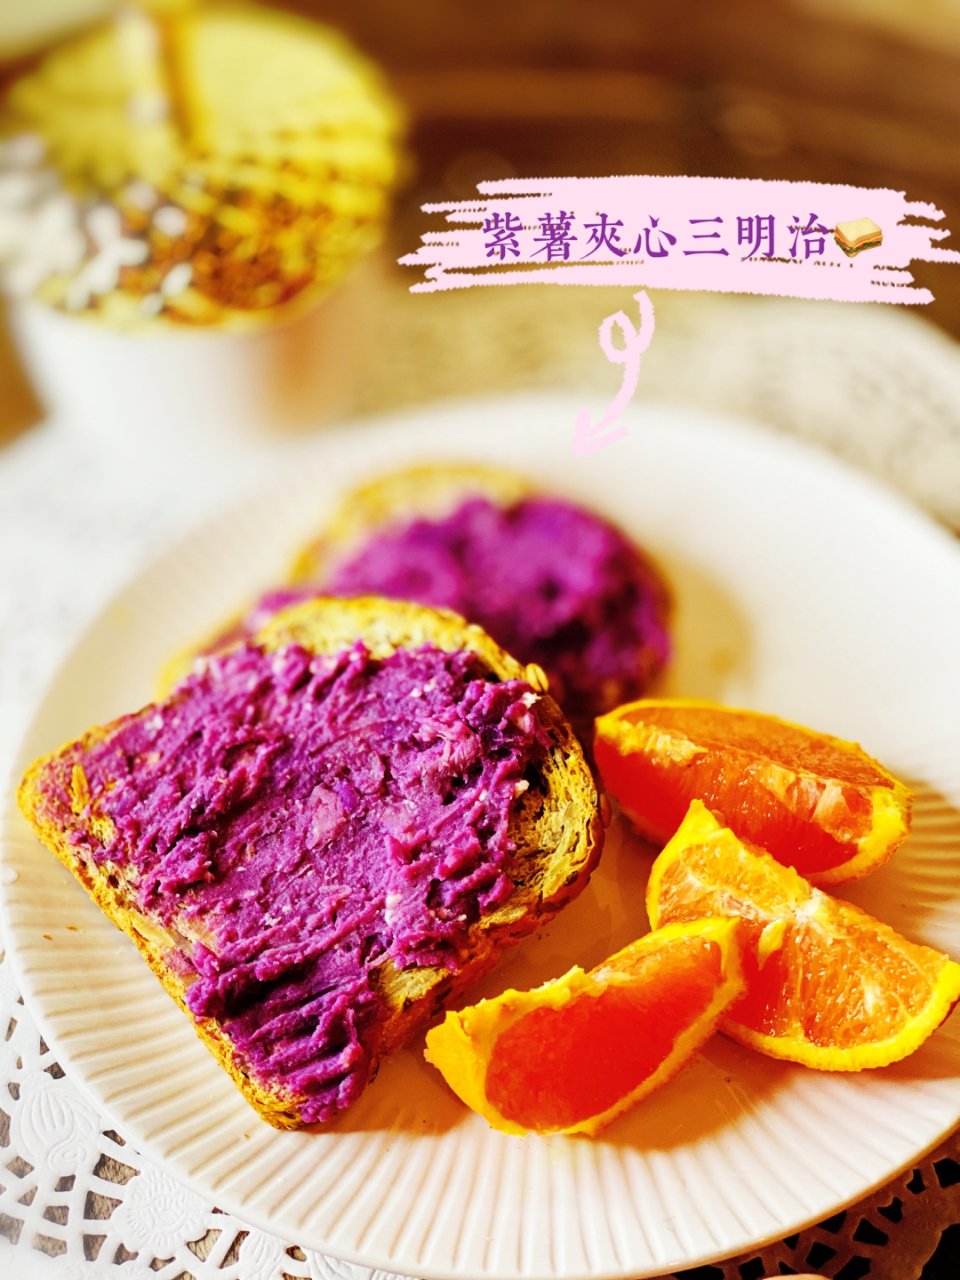 颜值在线的健康版紫薯夹心三明治✌️...